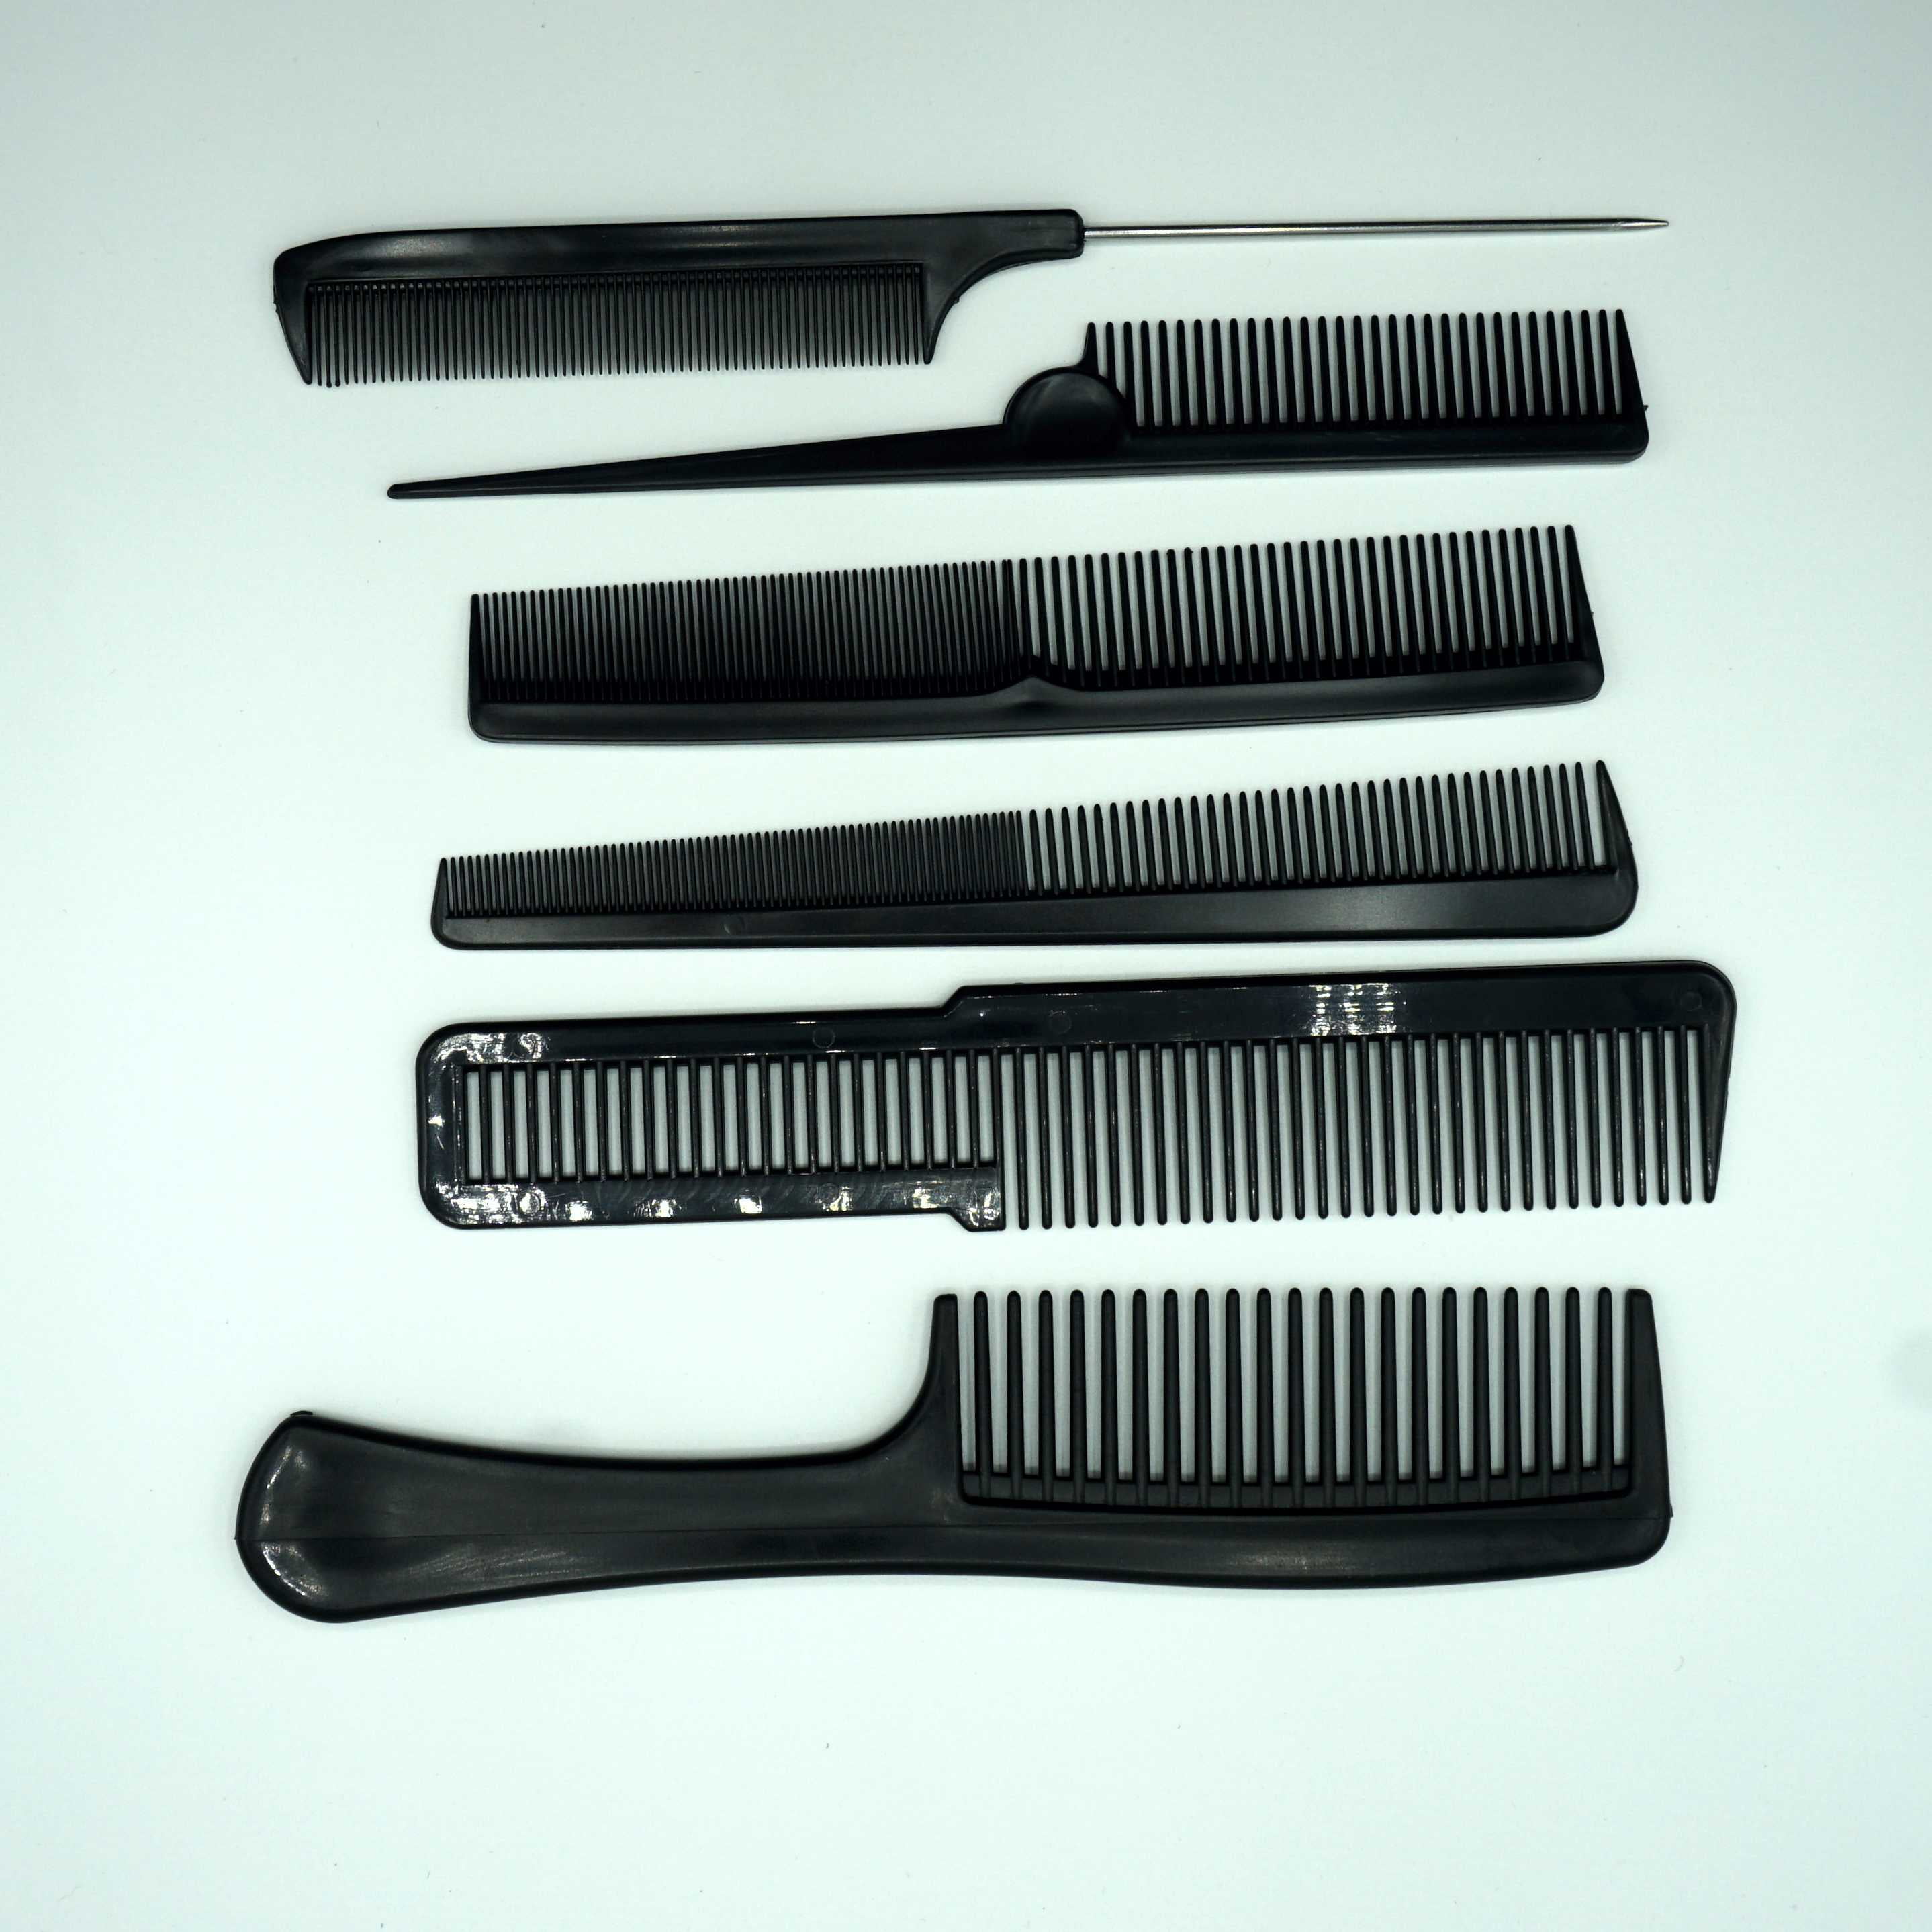 Plastic Comb Set